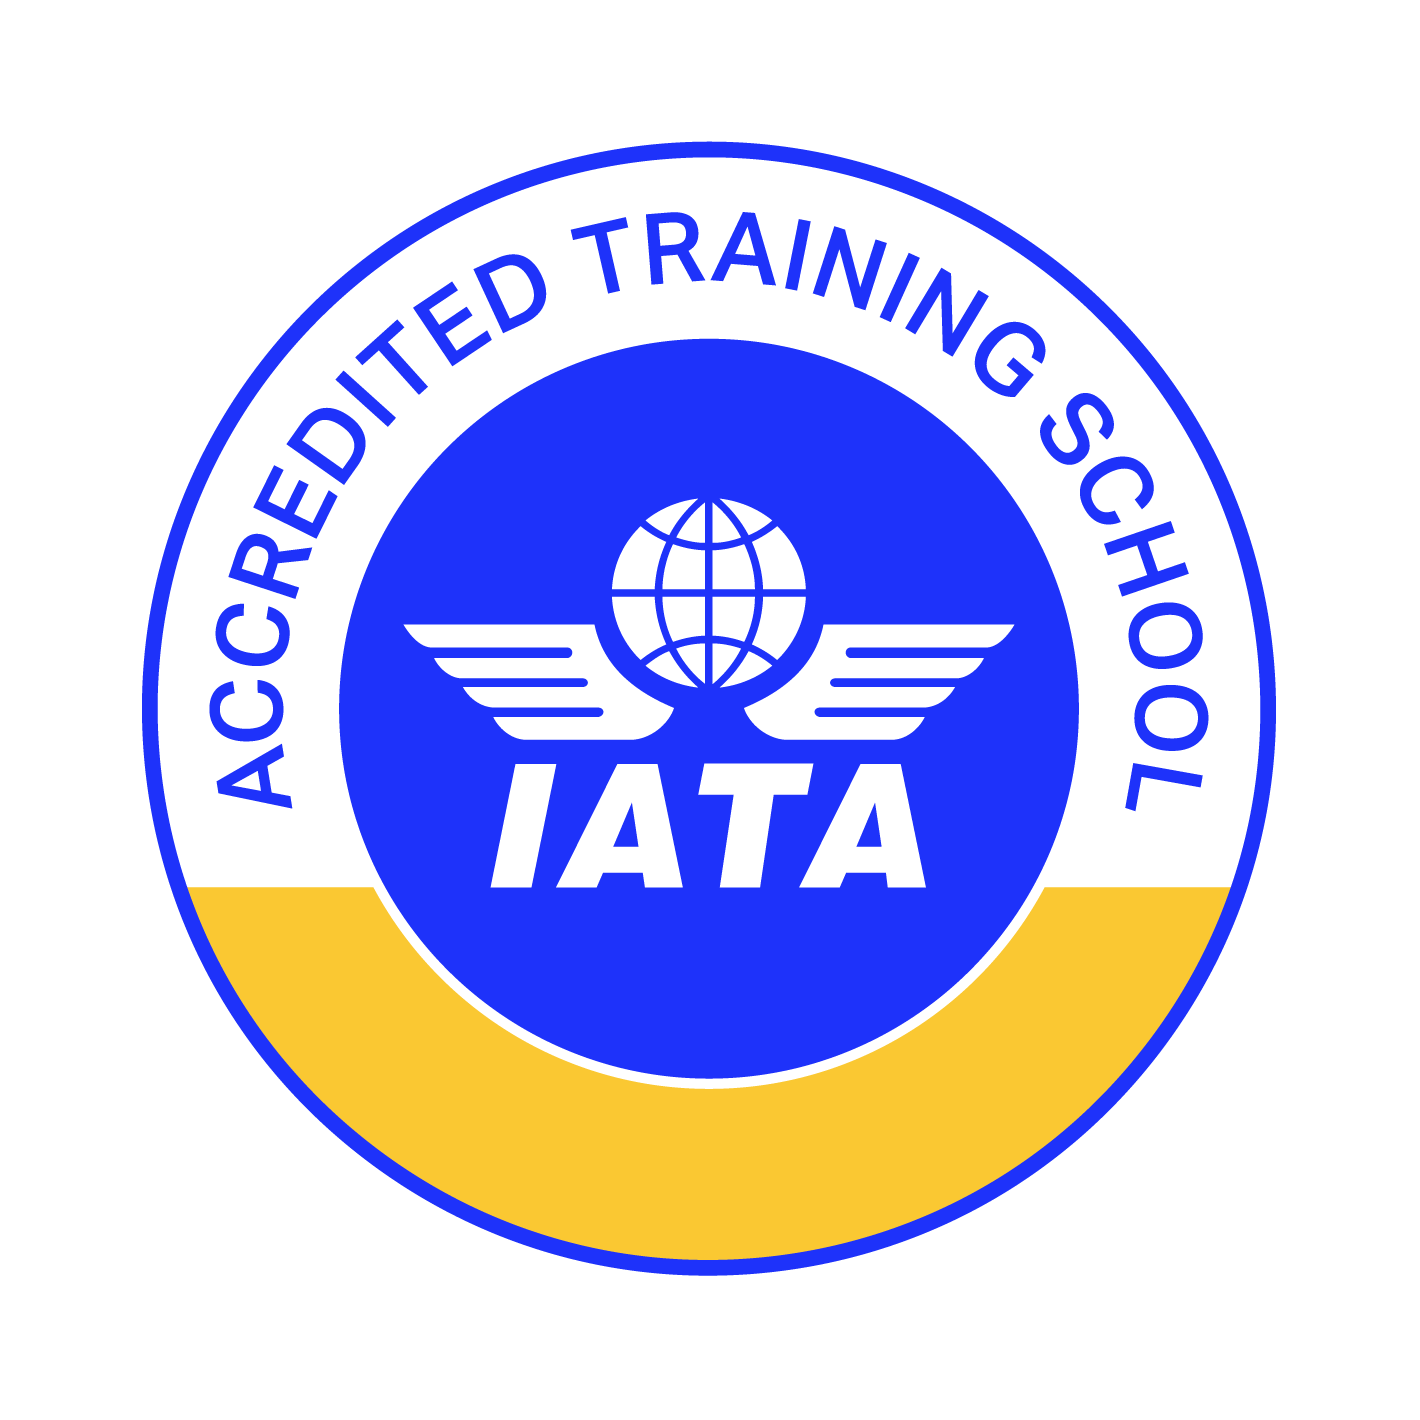 IATA-Training_ATS_1420x1420px_RGB (1).png (90 KB)